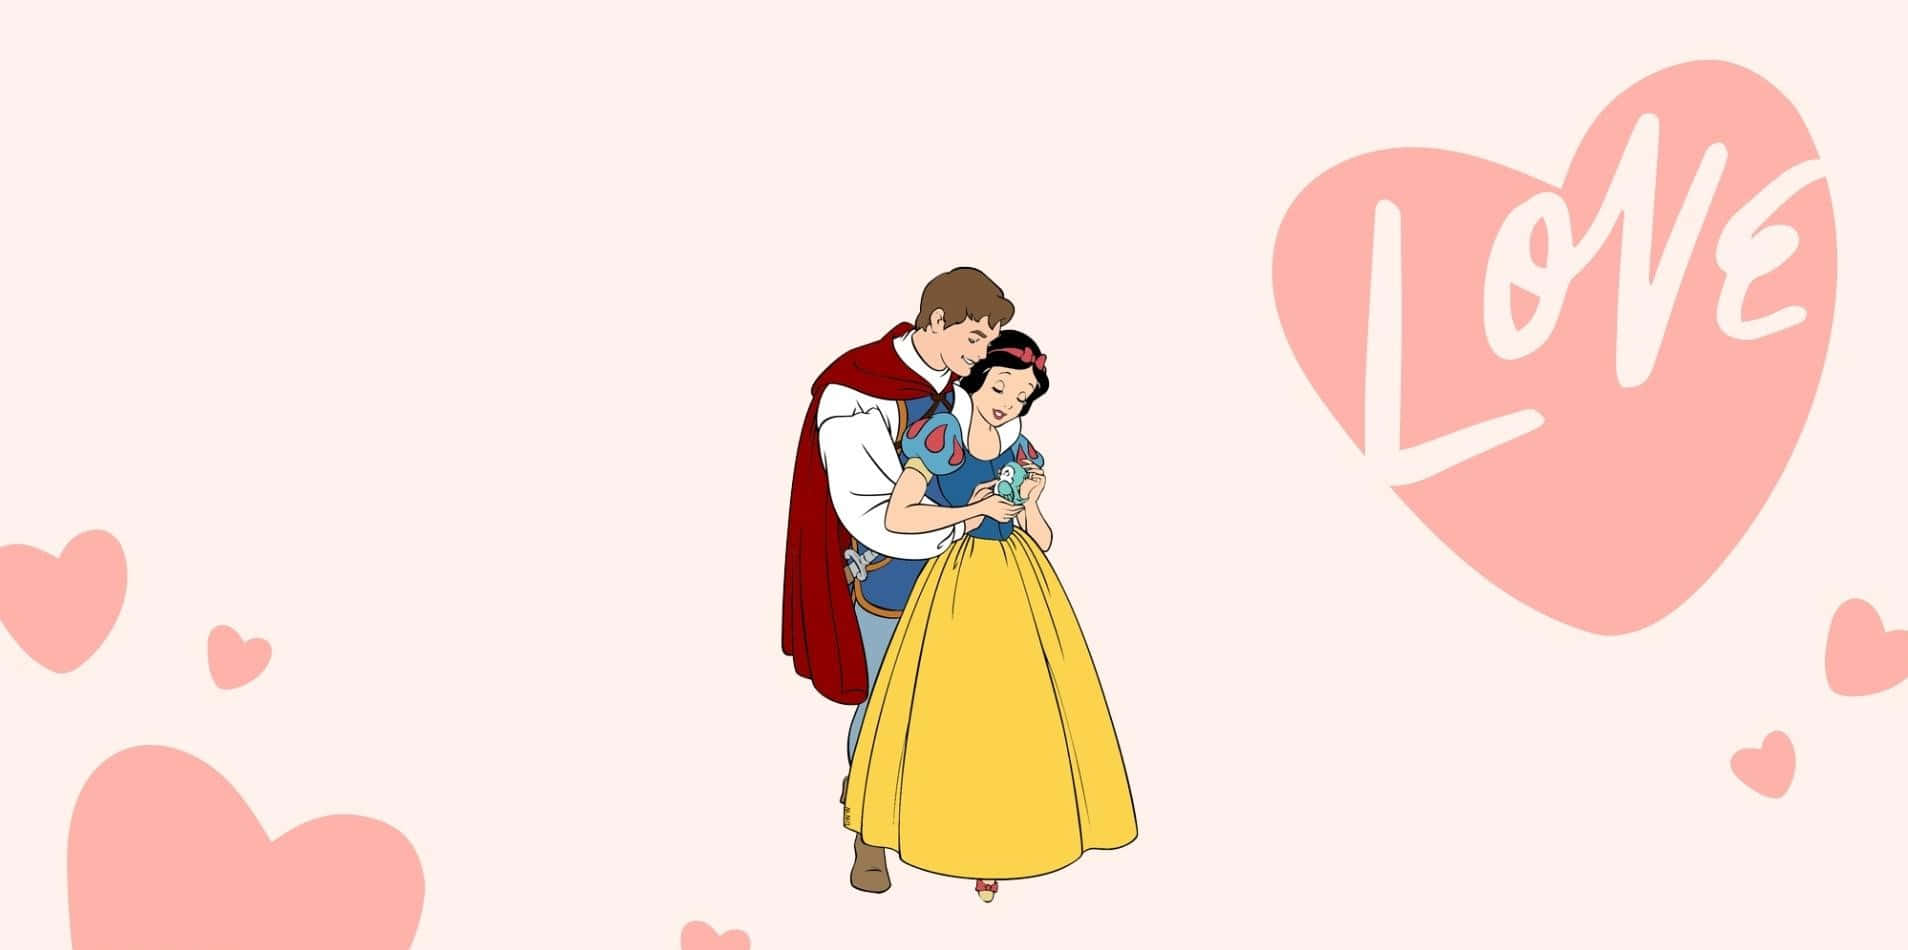 Disneyvalentine Snow White Och Prins Charmig. Wallpaper